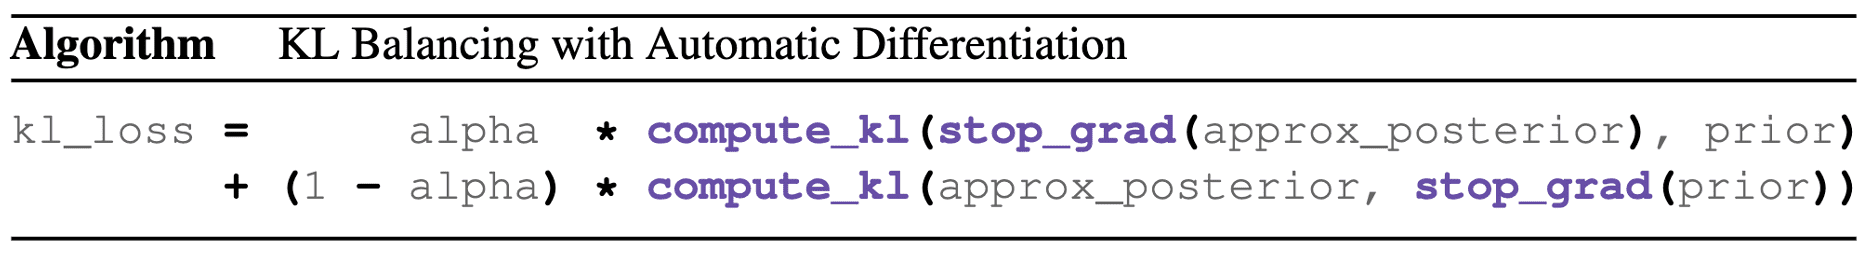 Pseudocode of KL balancing.